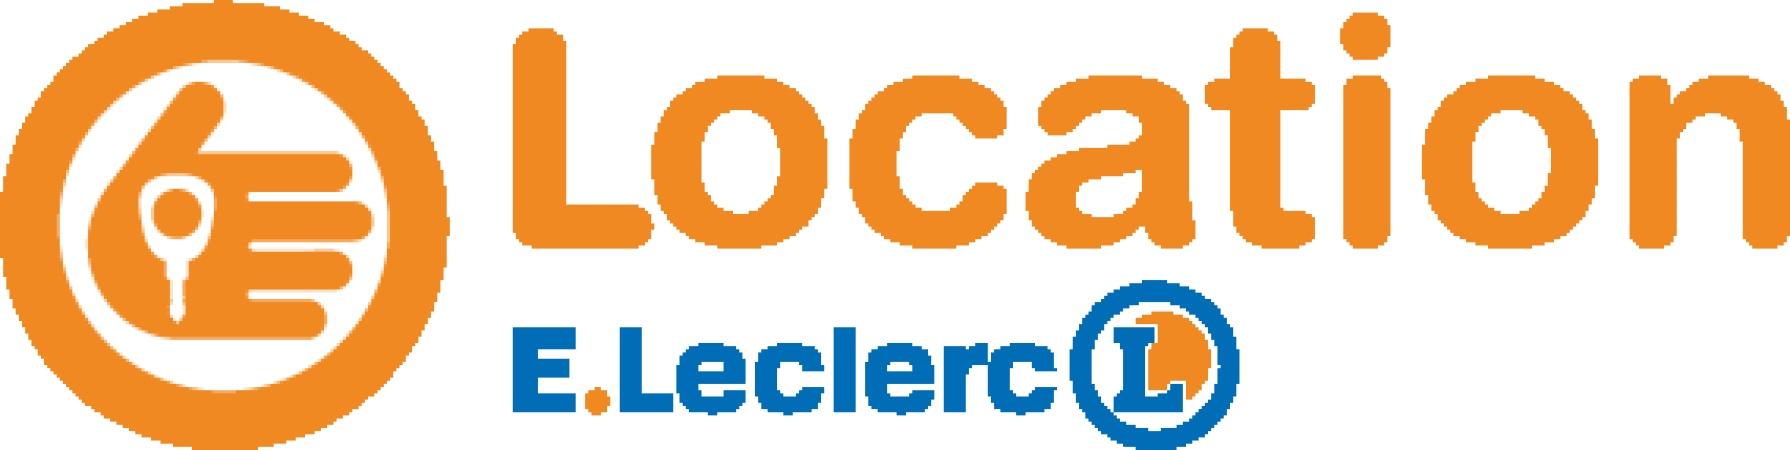 E.leclerc Location Mâcon